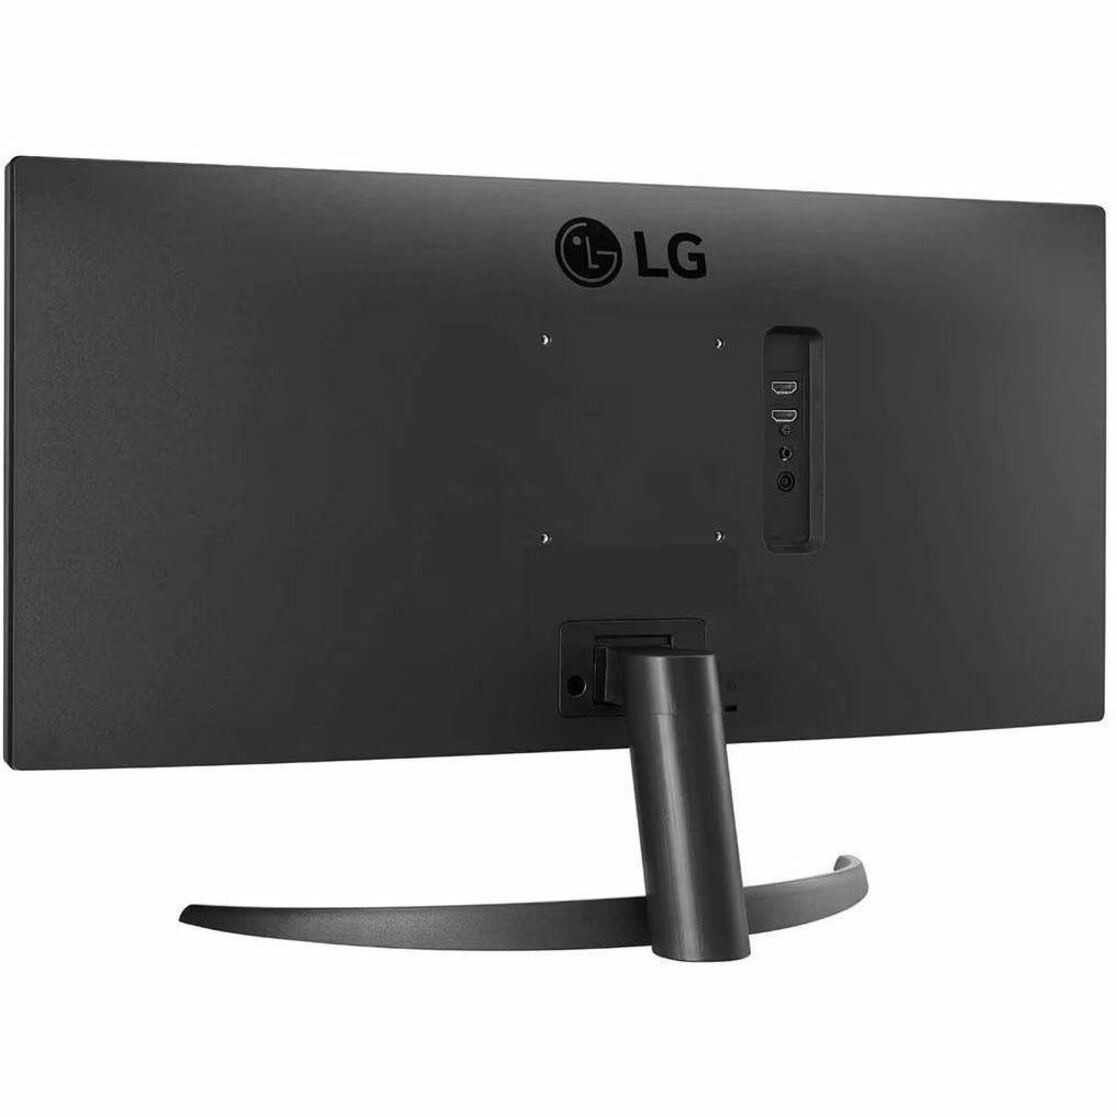 LG BQ500-B 26" WQHD LCD Monitor